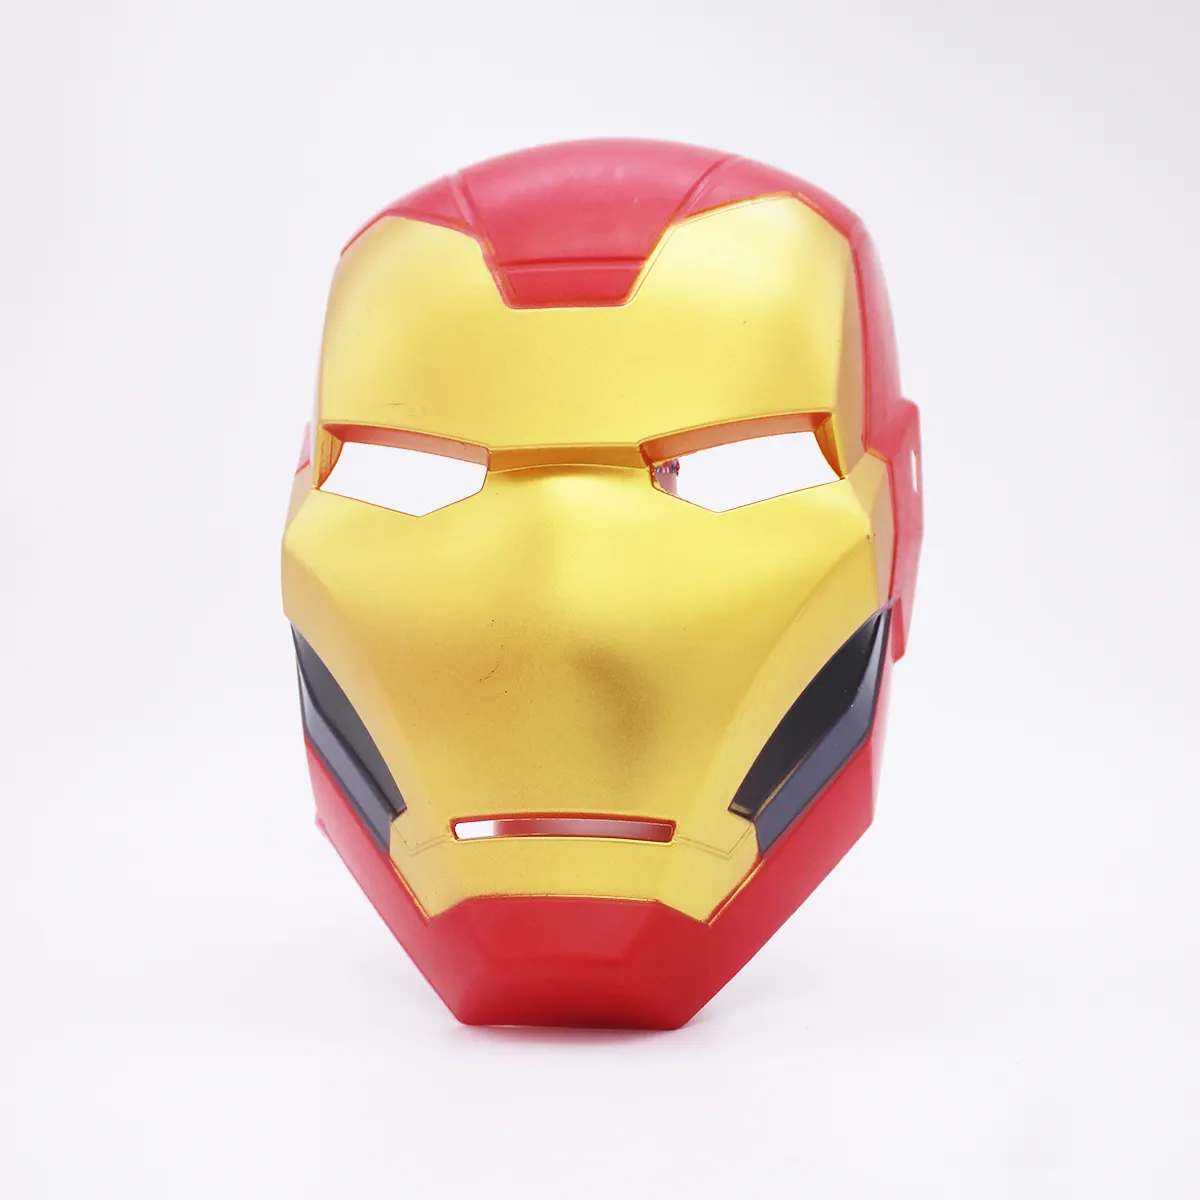 TKYGU Factory Direct sales cheap Iron Man mask Avengers realistic Iron Man mask